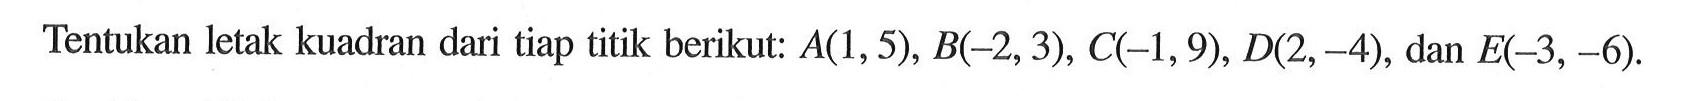 Tentukan letak kuadran dari tiap titik berikut: A(1,5), B(-2, 3), C(-1,9), D(2,-4), dan E(-3,-6).